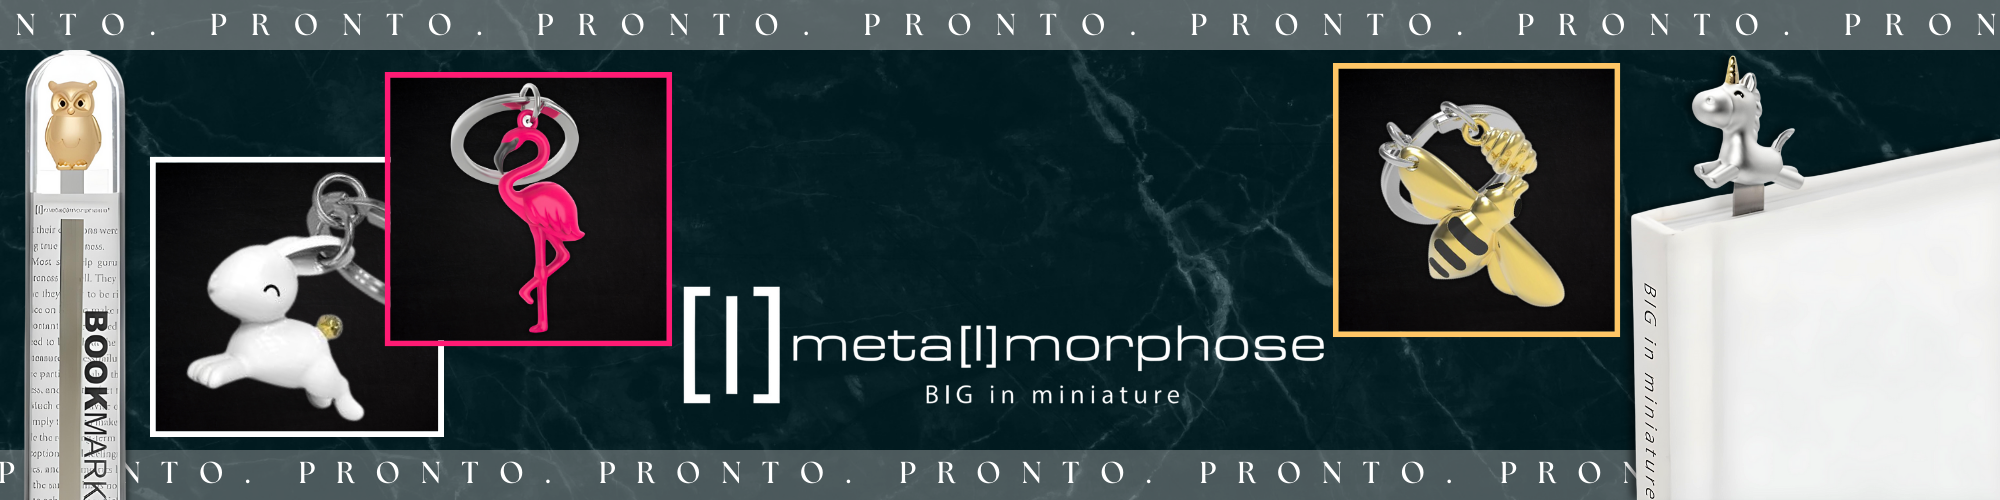 metalmorphie